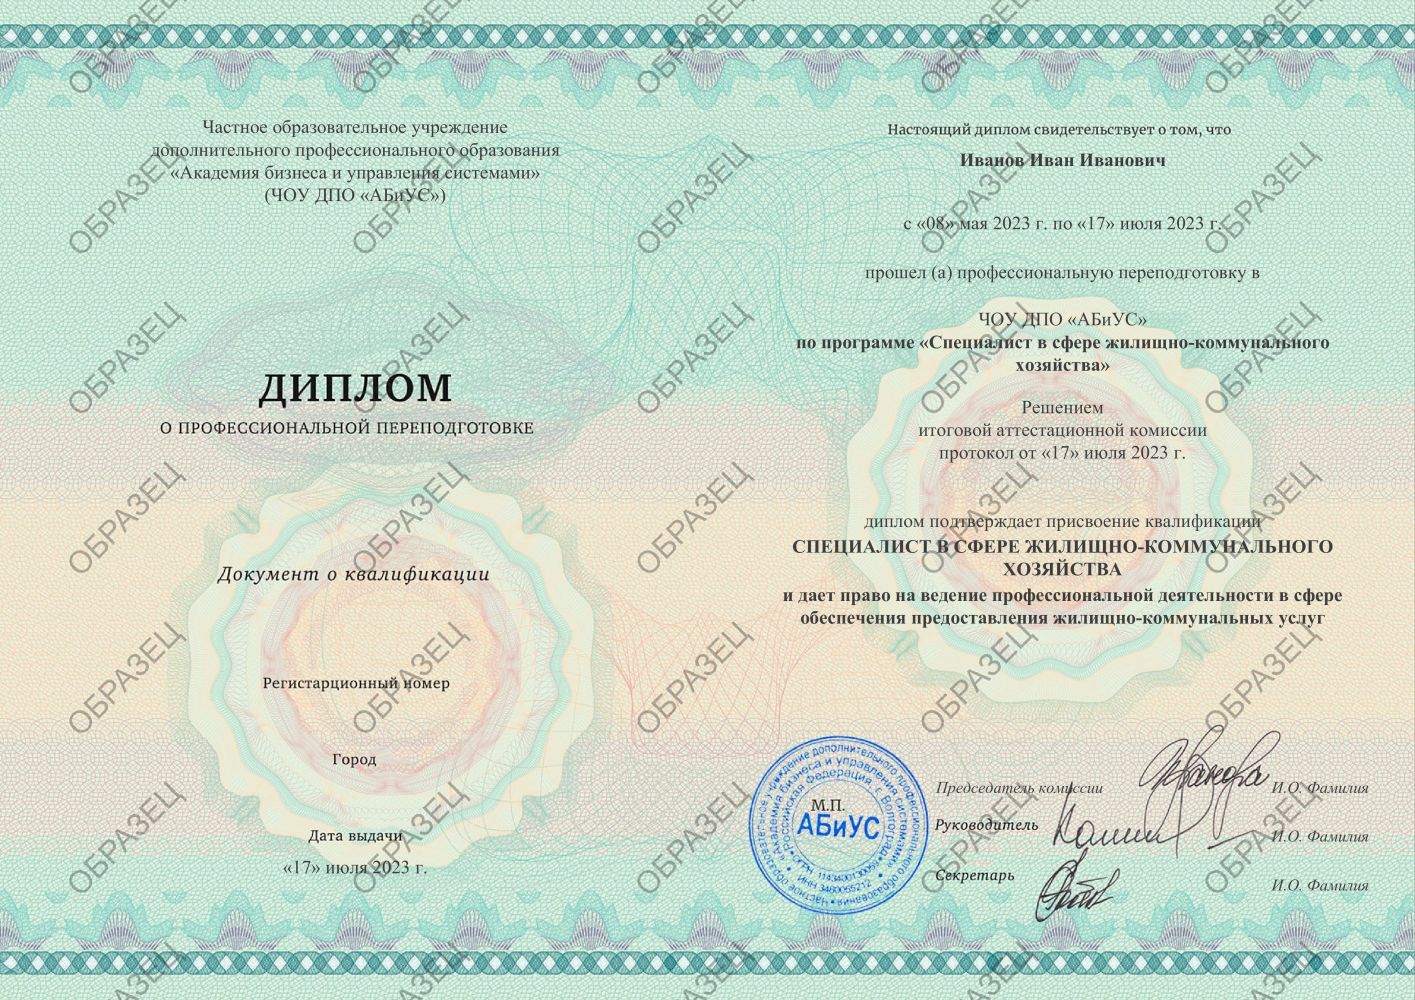 Диплом Специалист в сфере жилищно-коммунального хозяйства 260 часов 8813 руб.